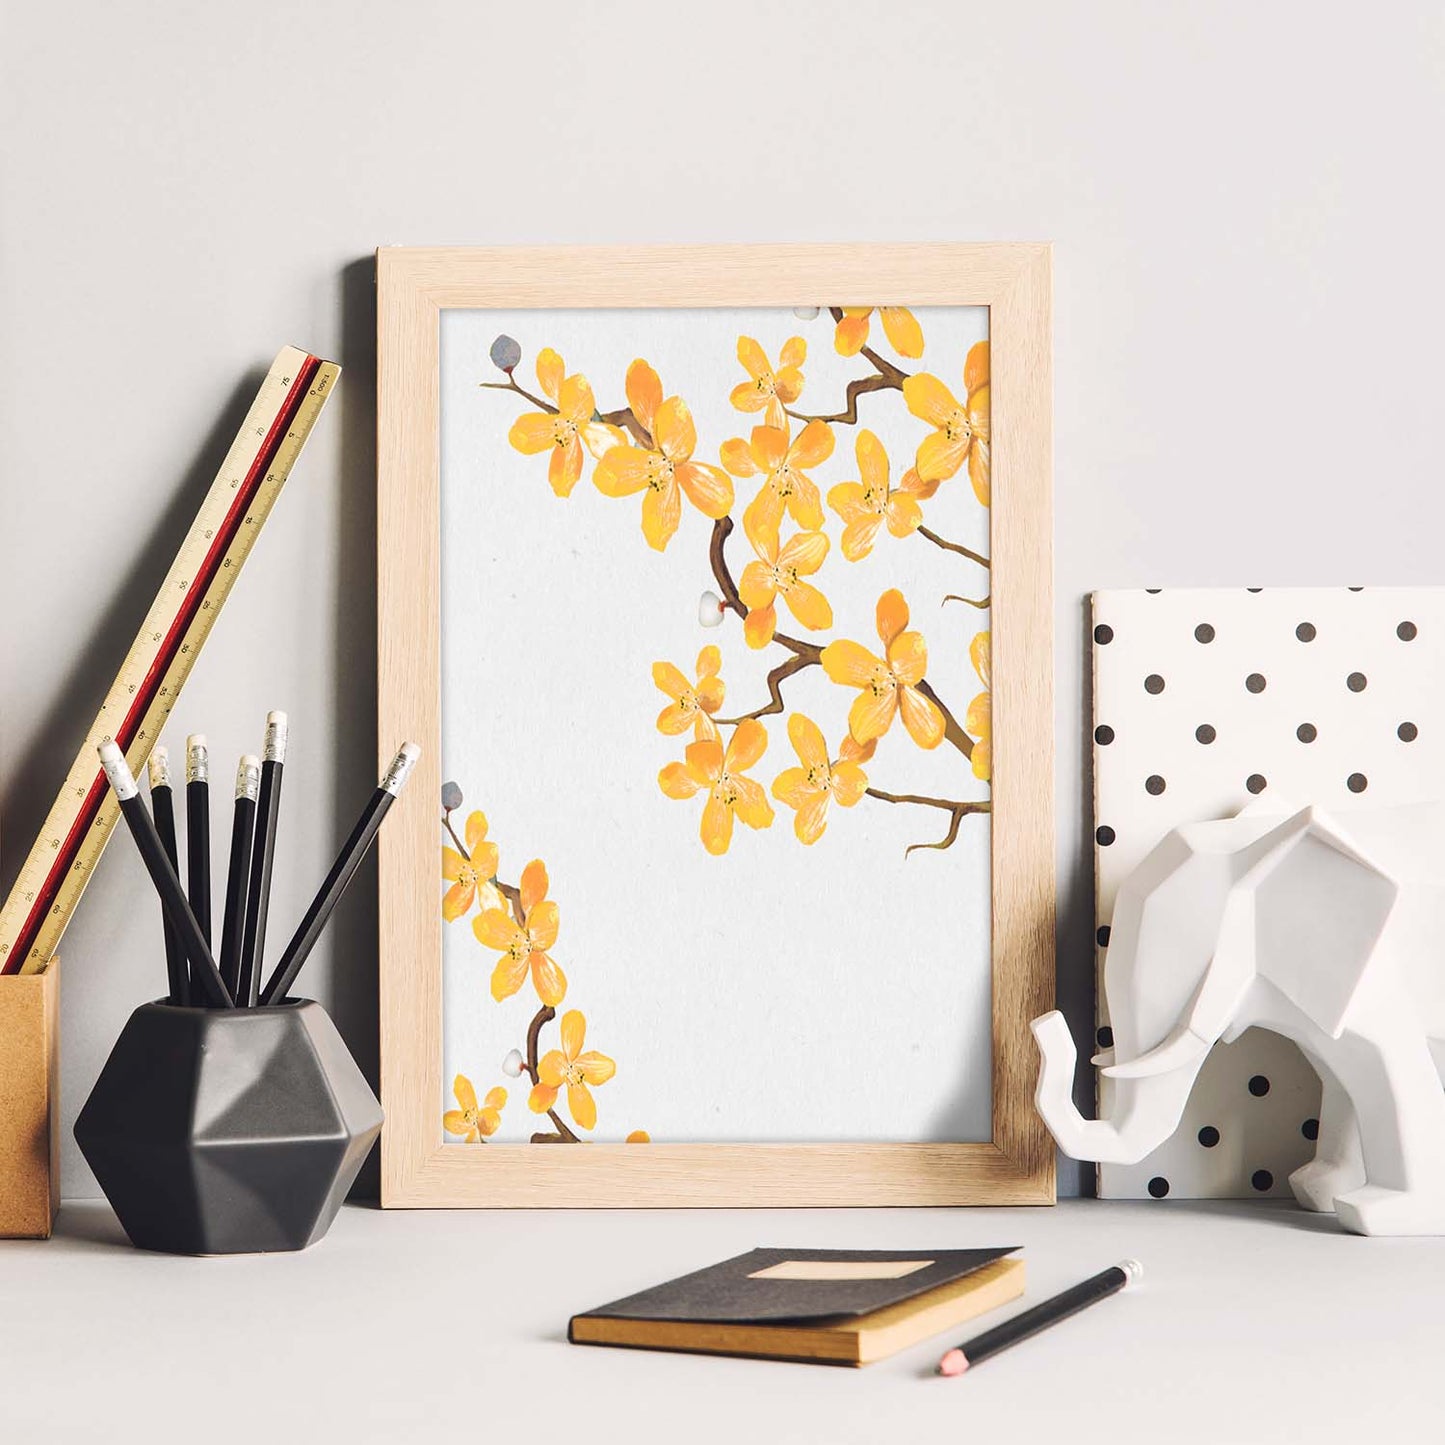 Poster de ramas con estilo de óleo. Lámina Ramas 6, con dibujos pintados de ramas, hojas, y flores.-Artwork-Nacnic-Nacnic Estudio SL